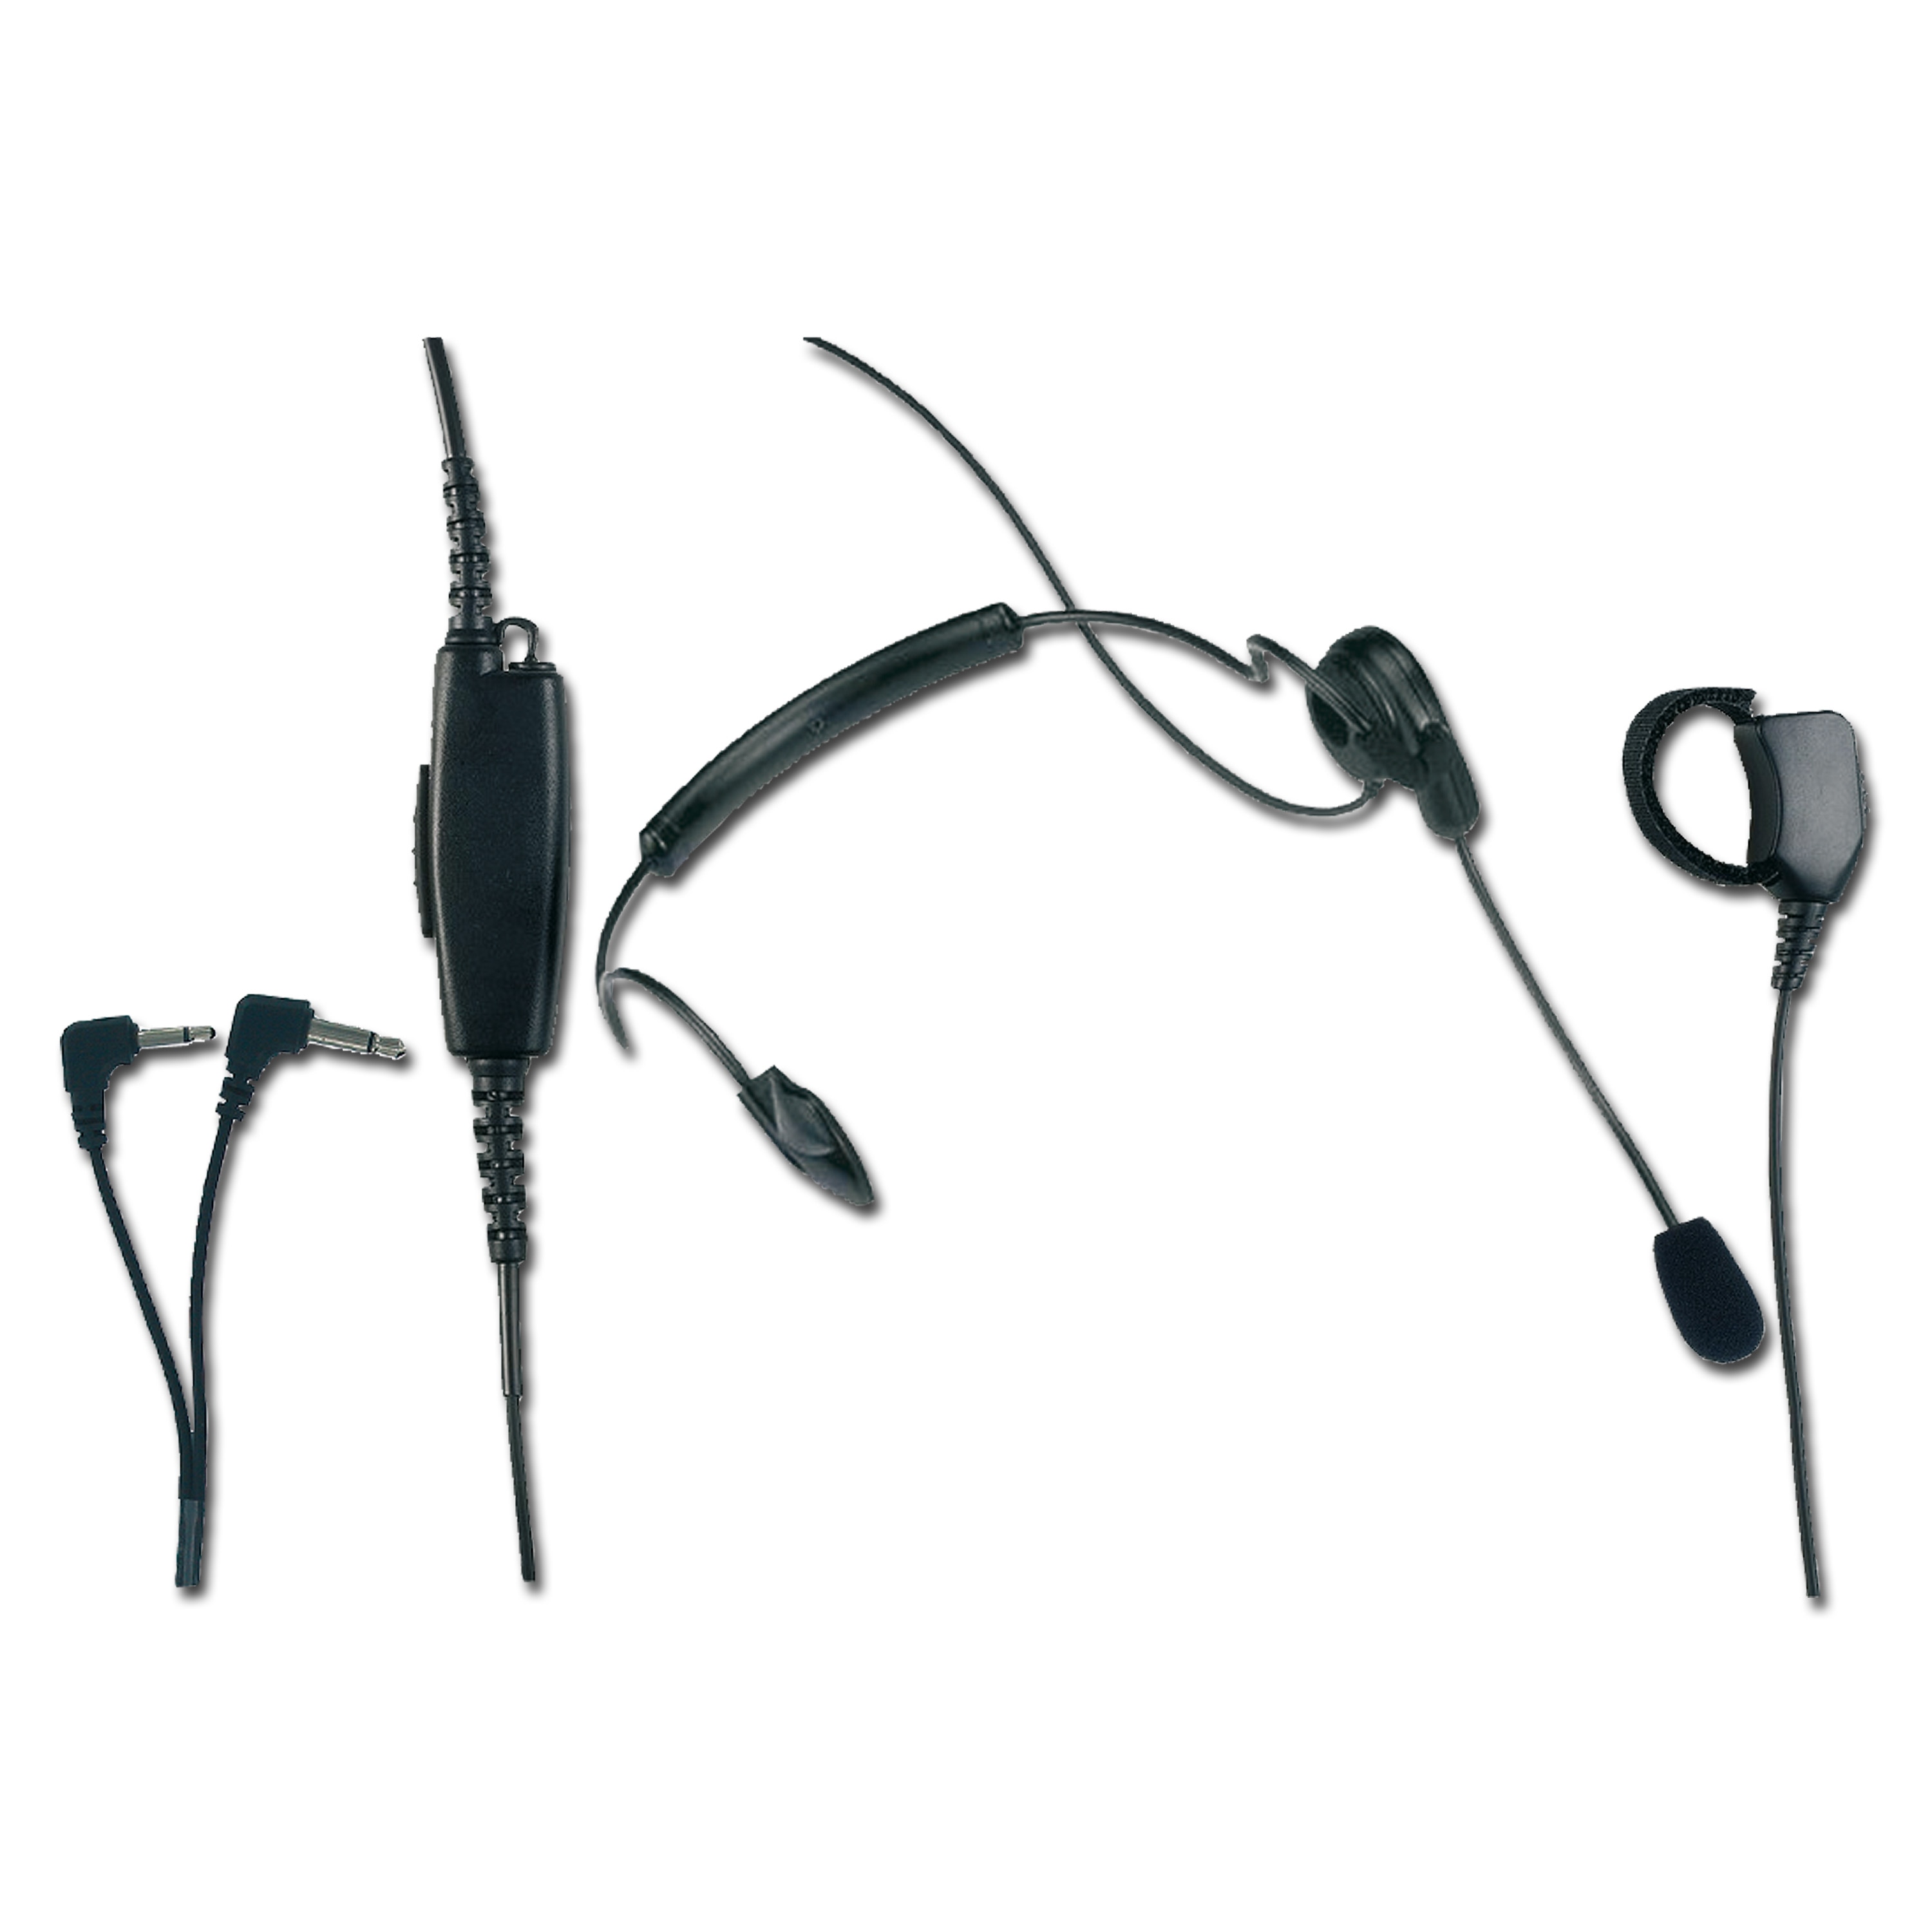 Alan Electronics Albrecht HS 01 Sport-Headset Headset Mikrofon leicht robust